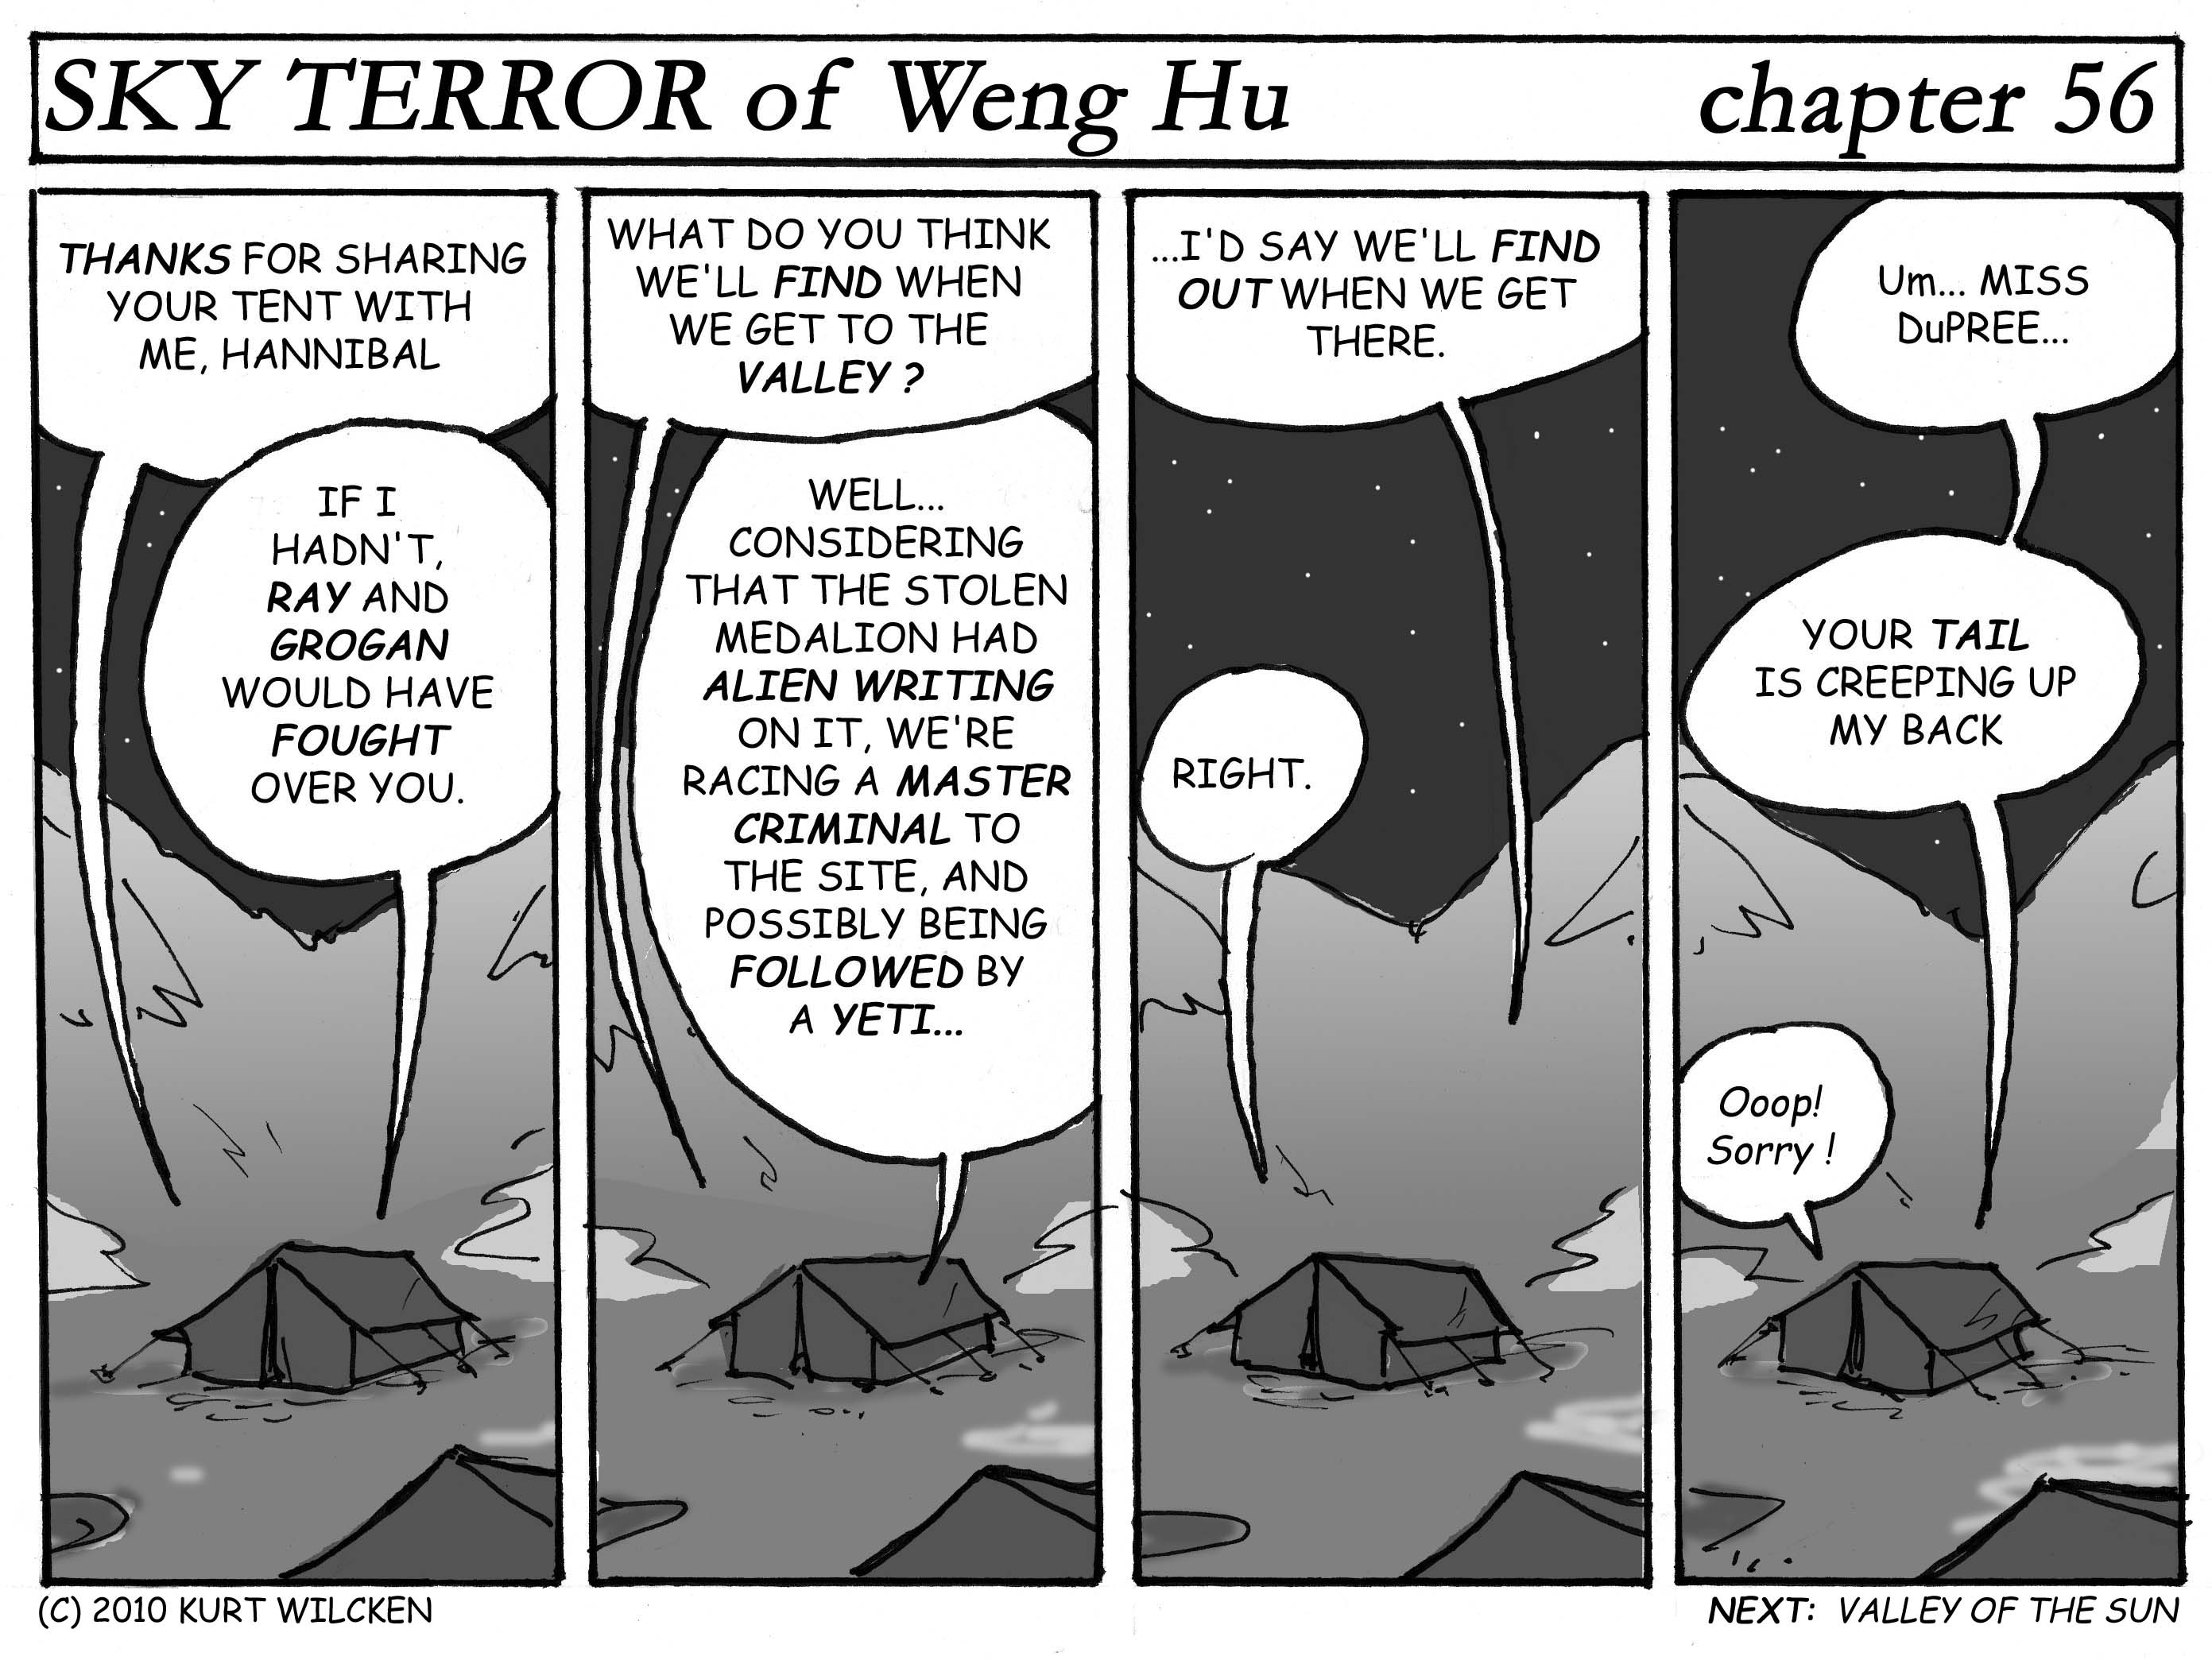 SKY TERROR of Weng Hu:  Chapter 56 — Pillow Talk